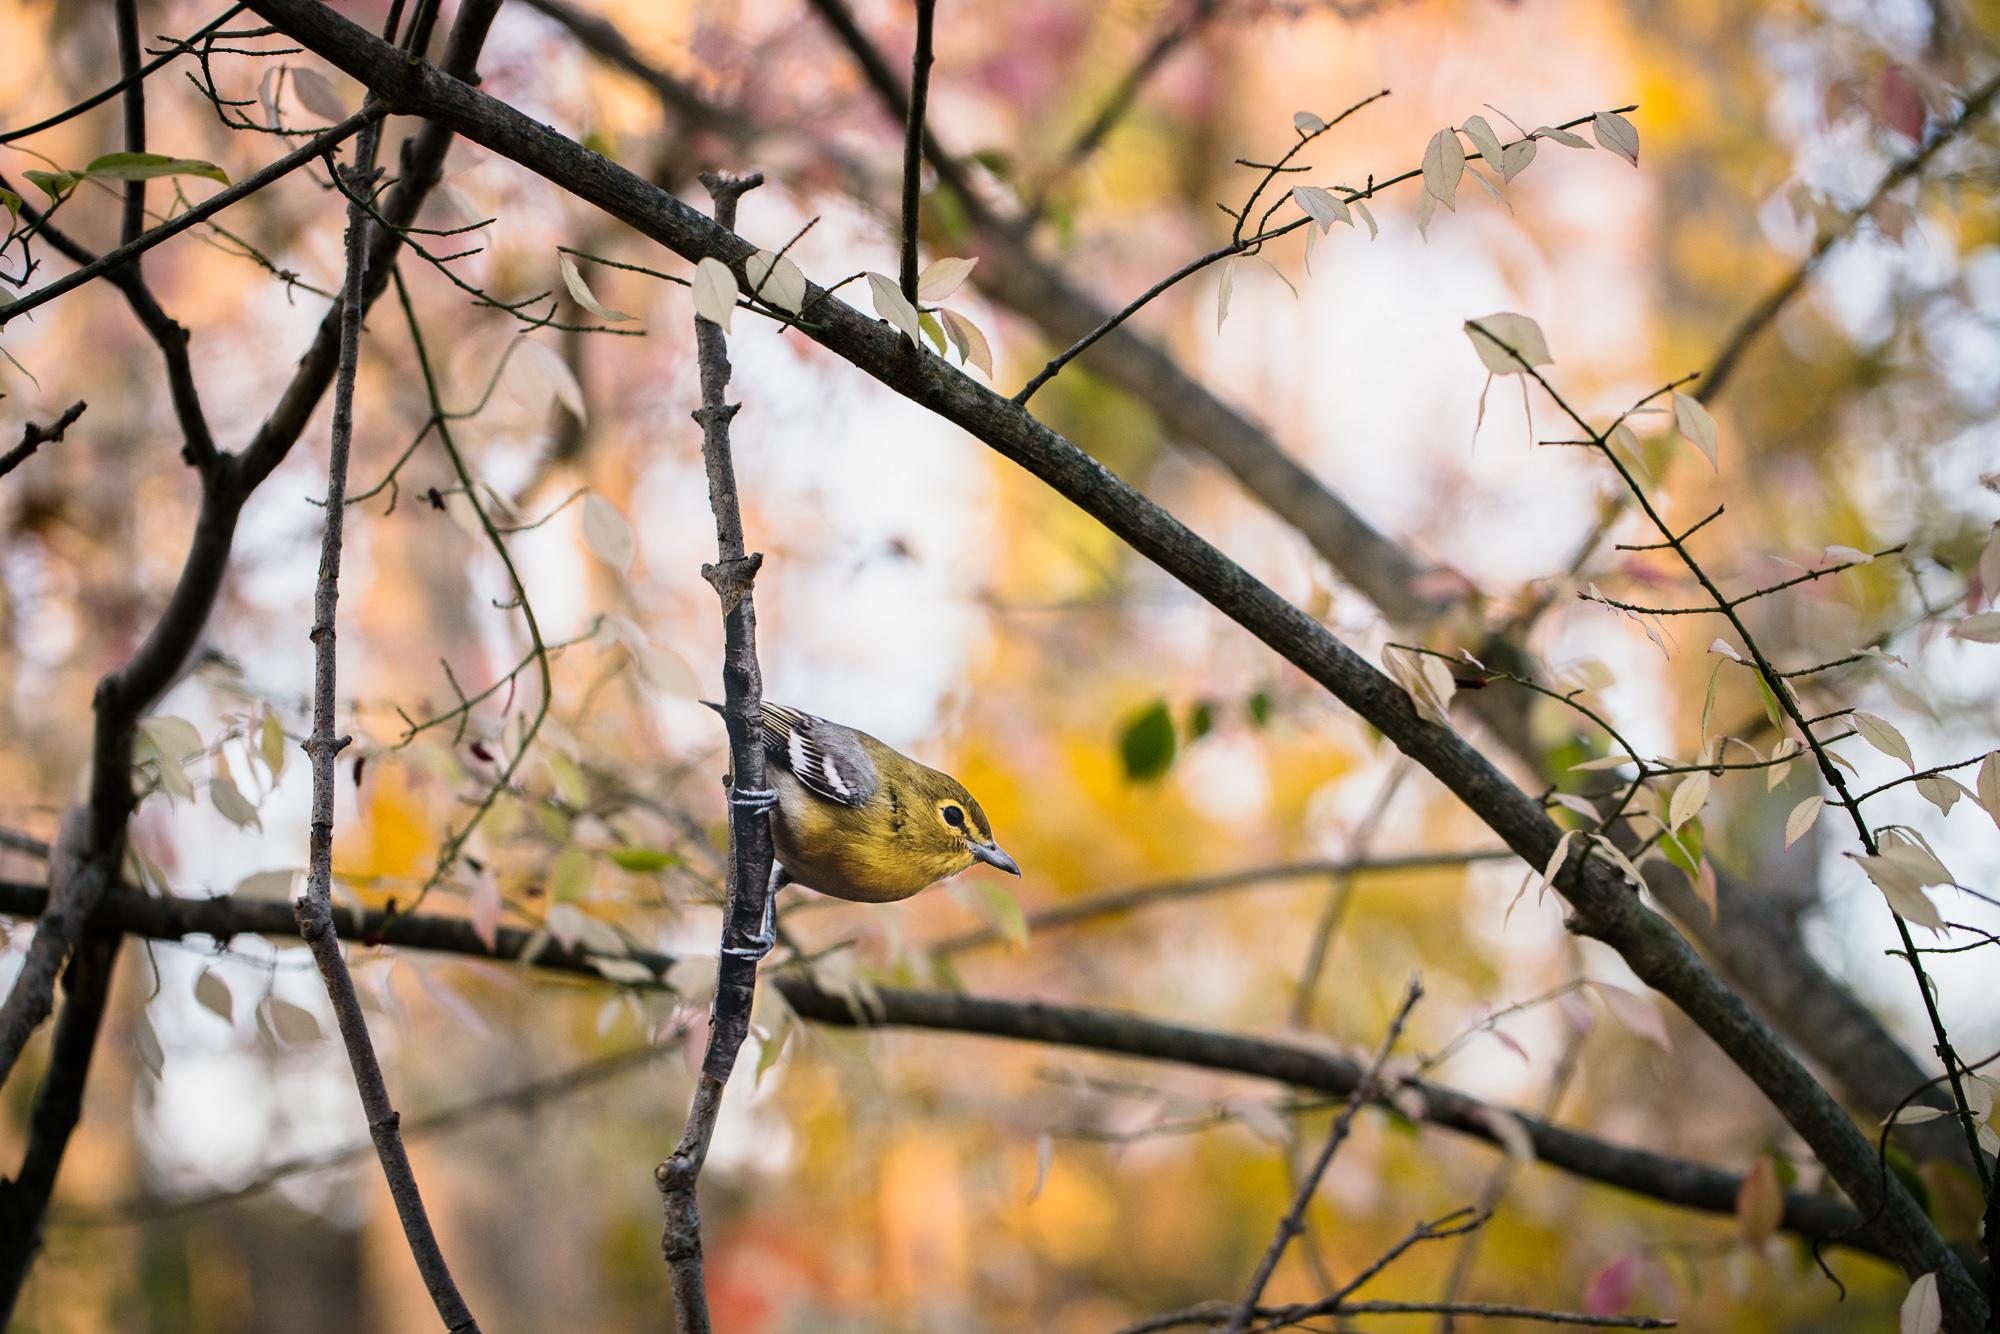 "Yellow-throated Vireo" - original bird photography by Matt Tillett